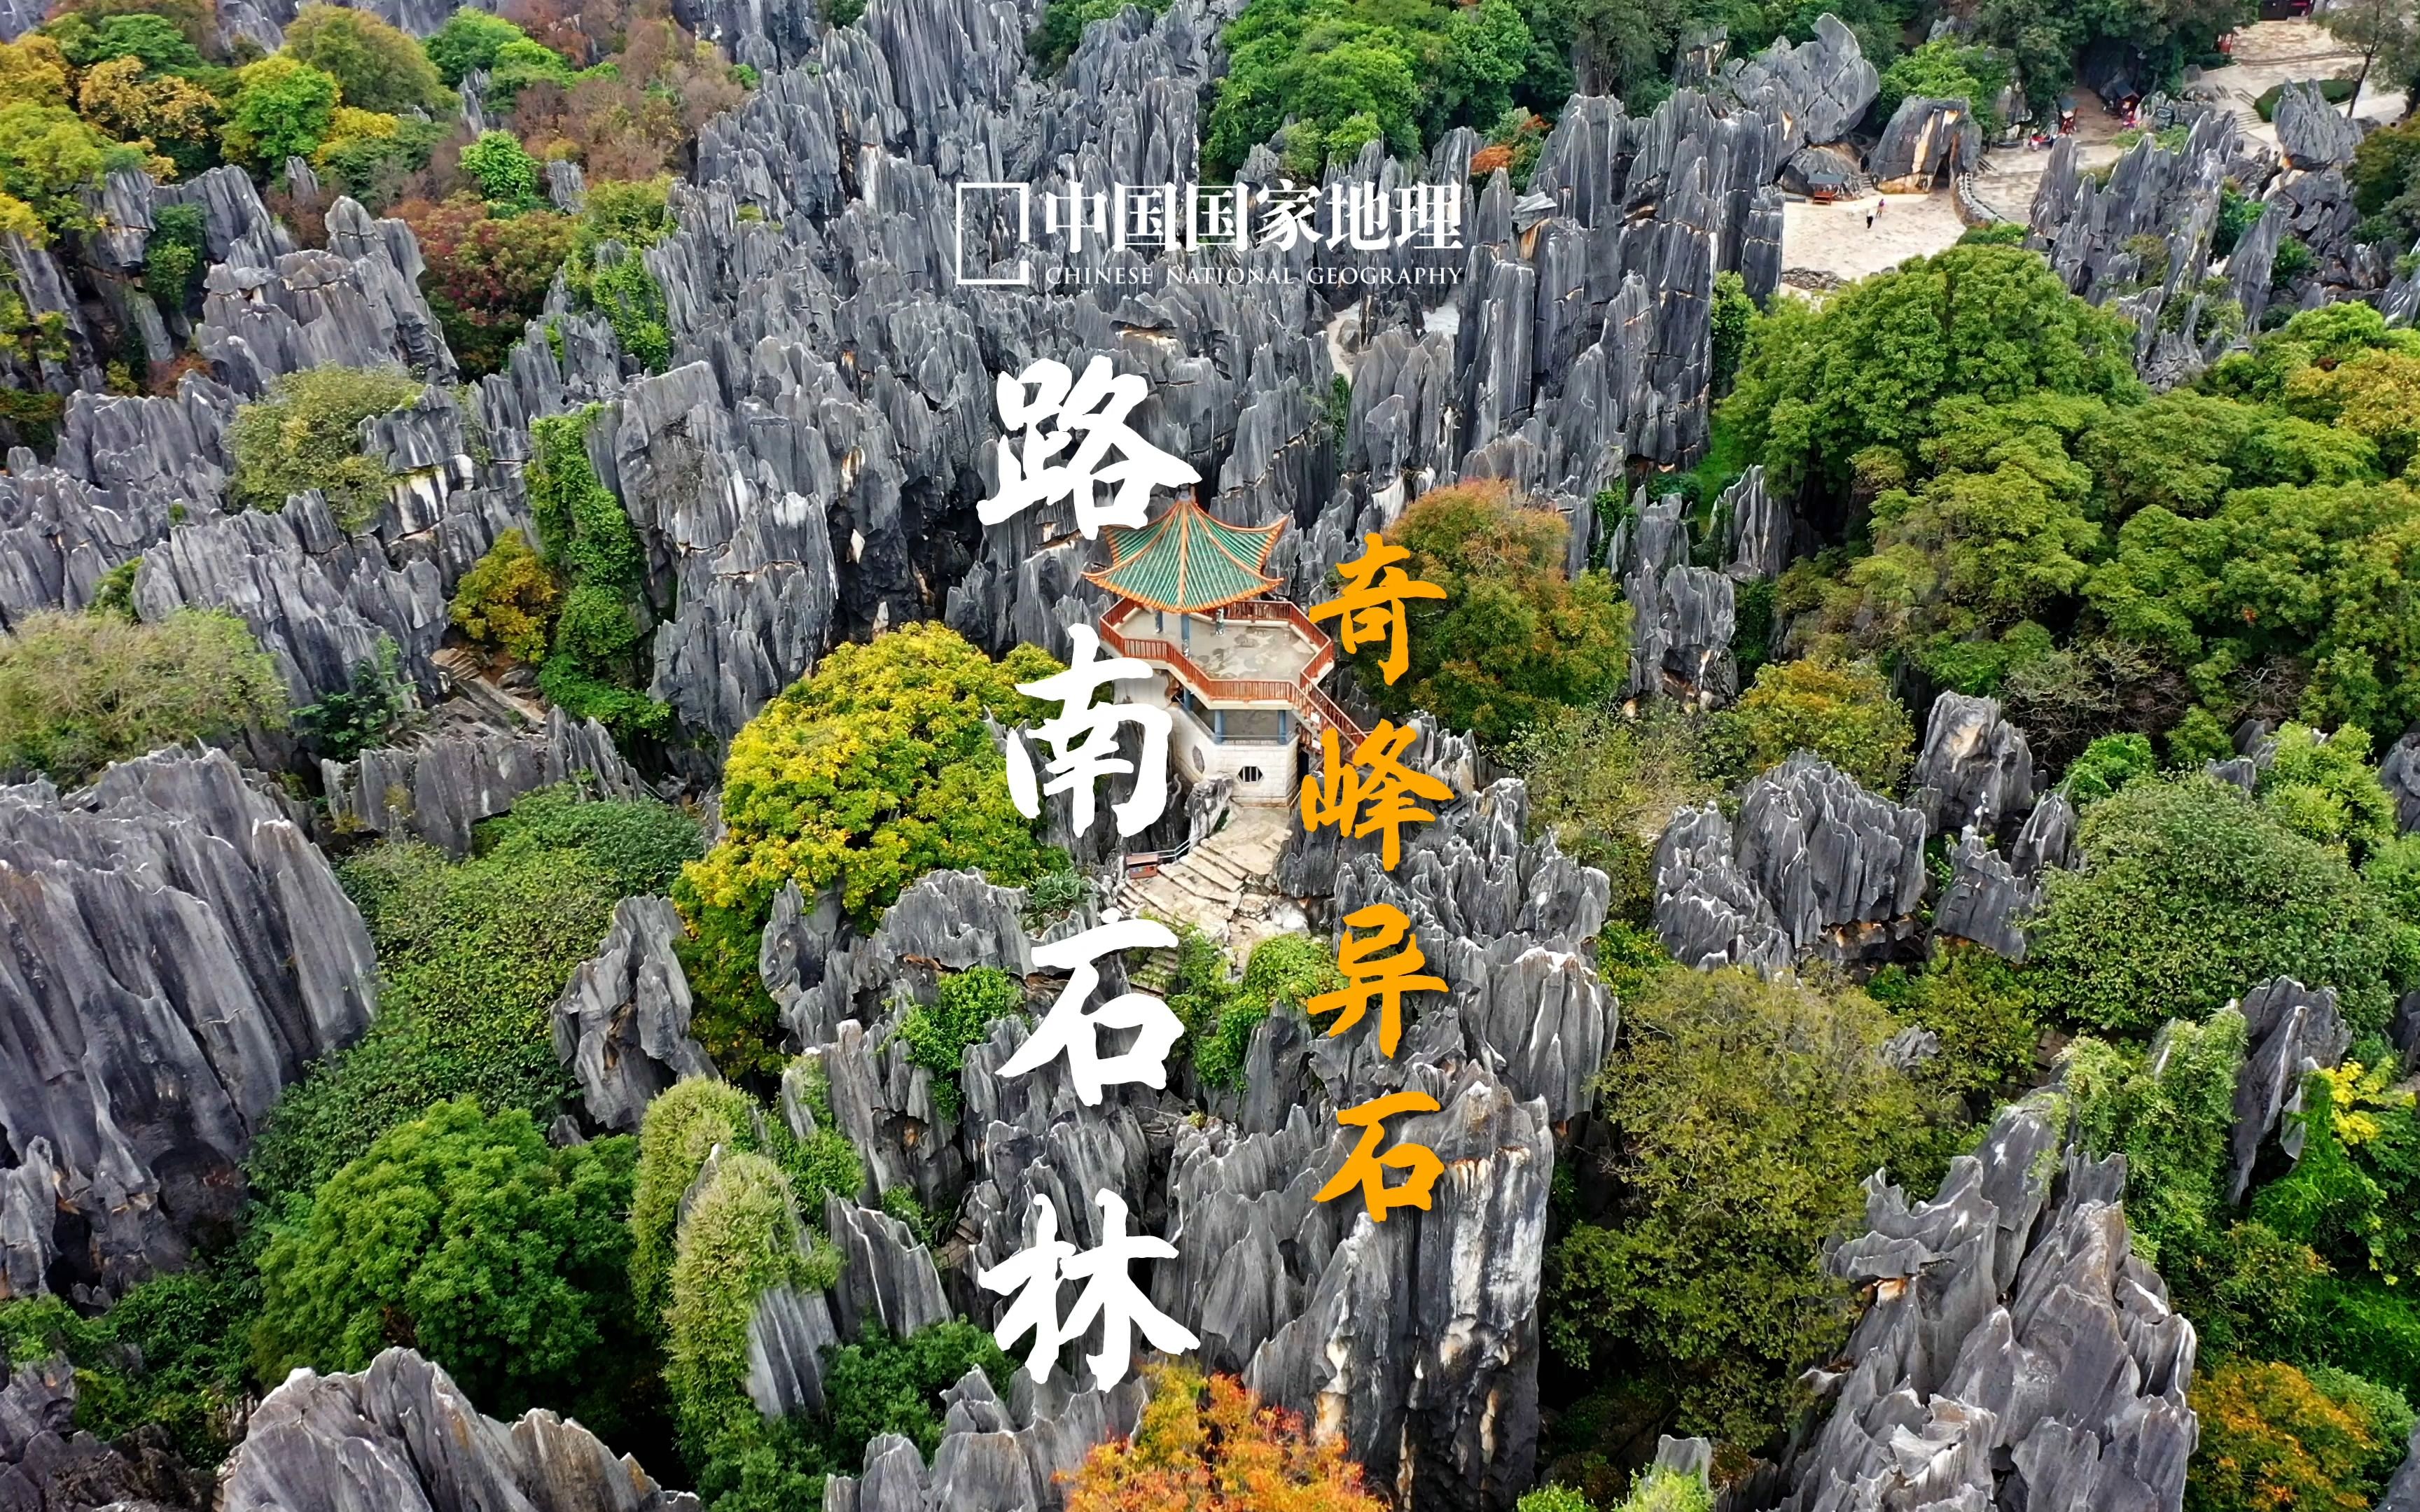 旅游随拍-----福建永安石林风景(上)-中关村在线摄影论坛